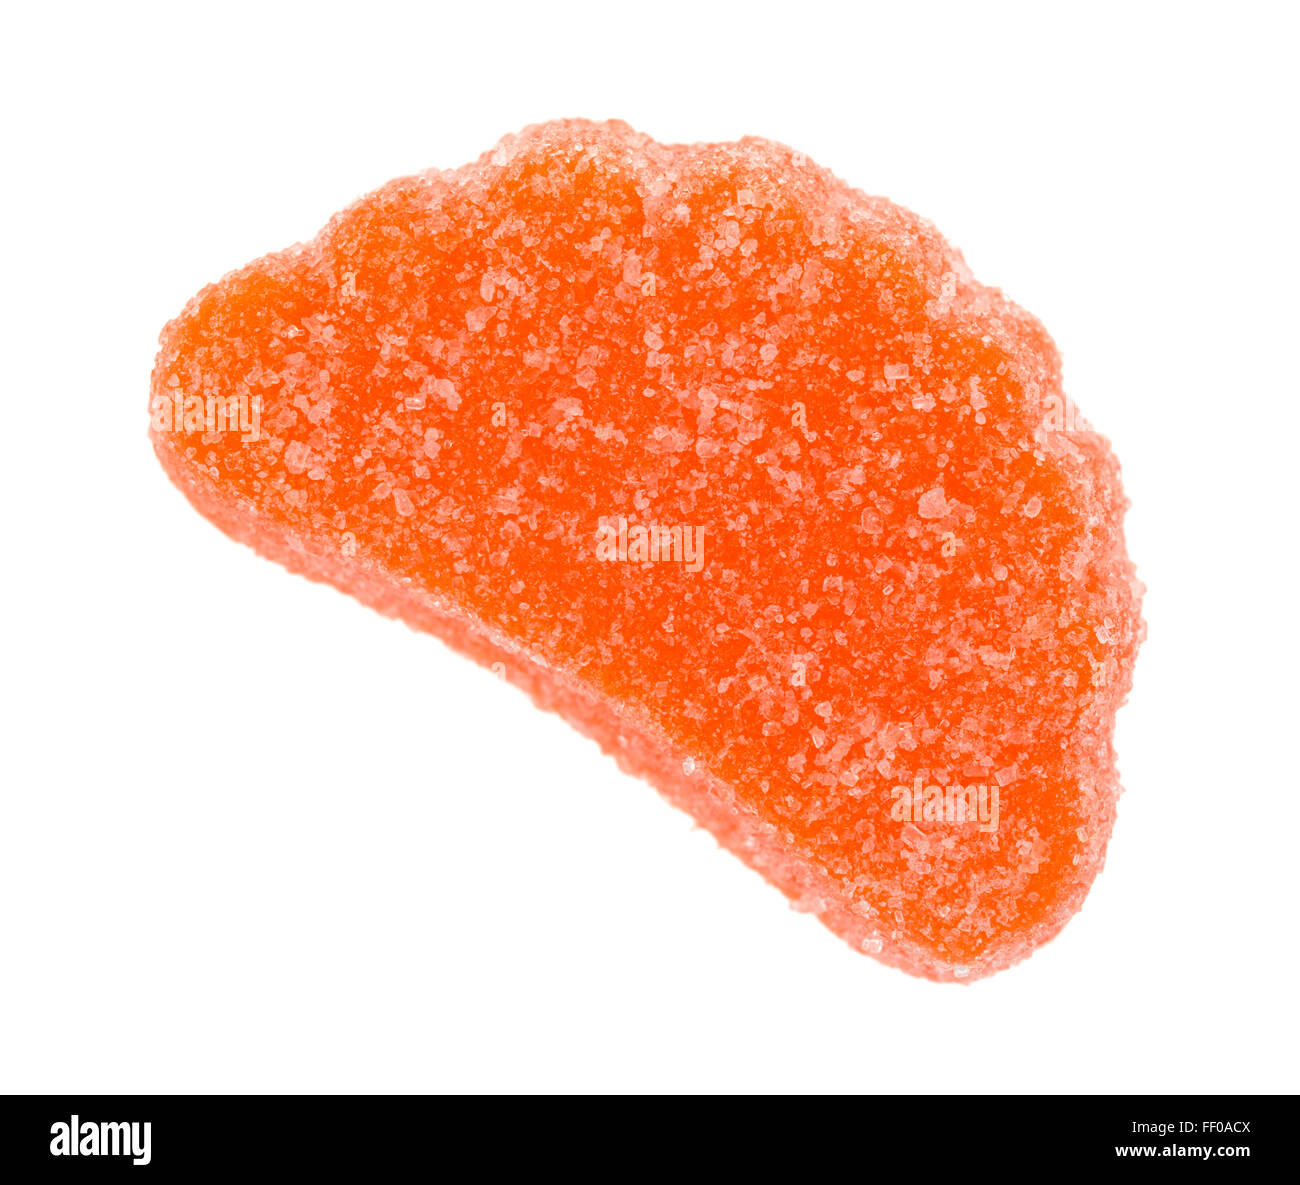 Eine orange Frucht aromatisiert Süßigkeiten Scheibe isoliert auf einem weißen Hintergrund. Stockfoto